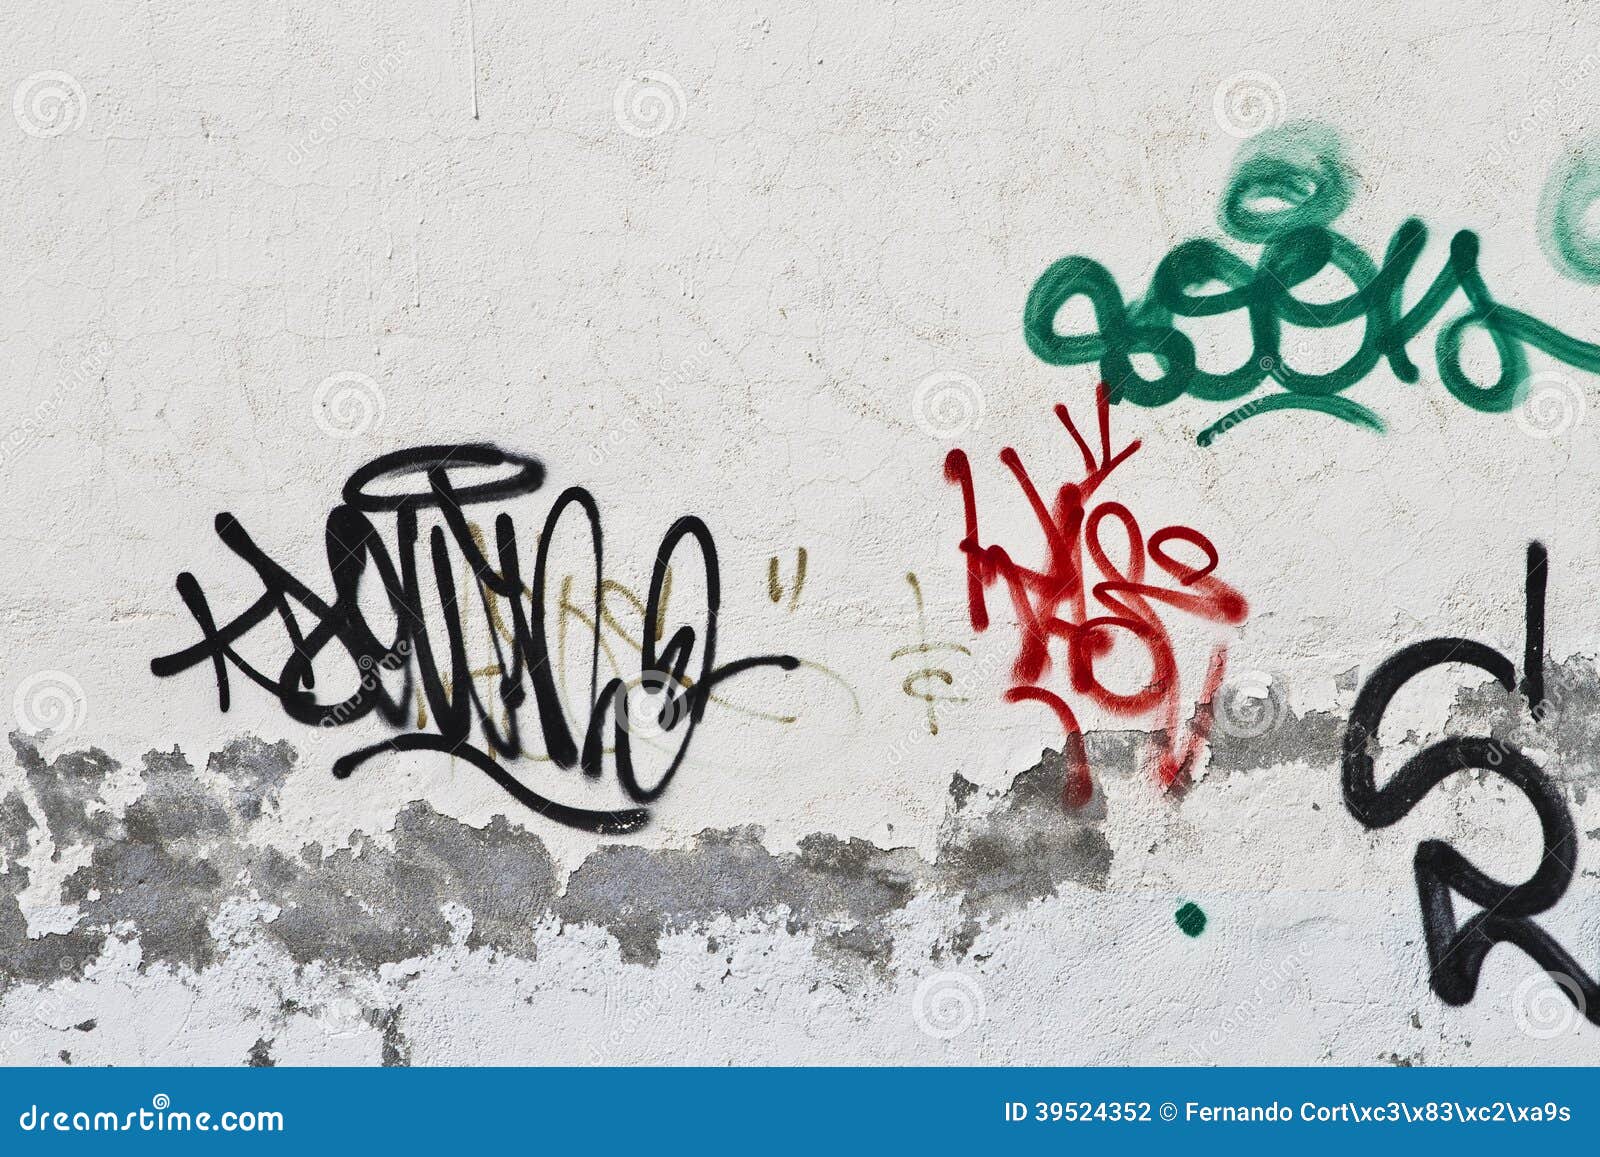 graffiti on grunge wall